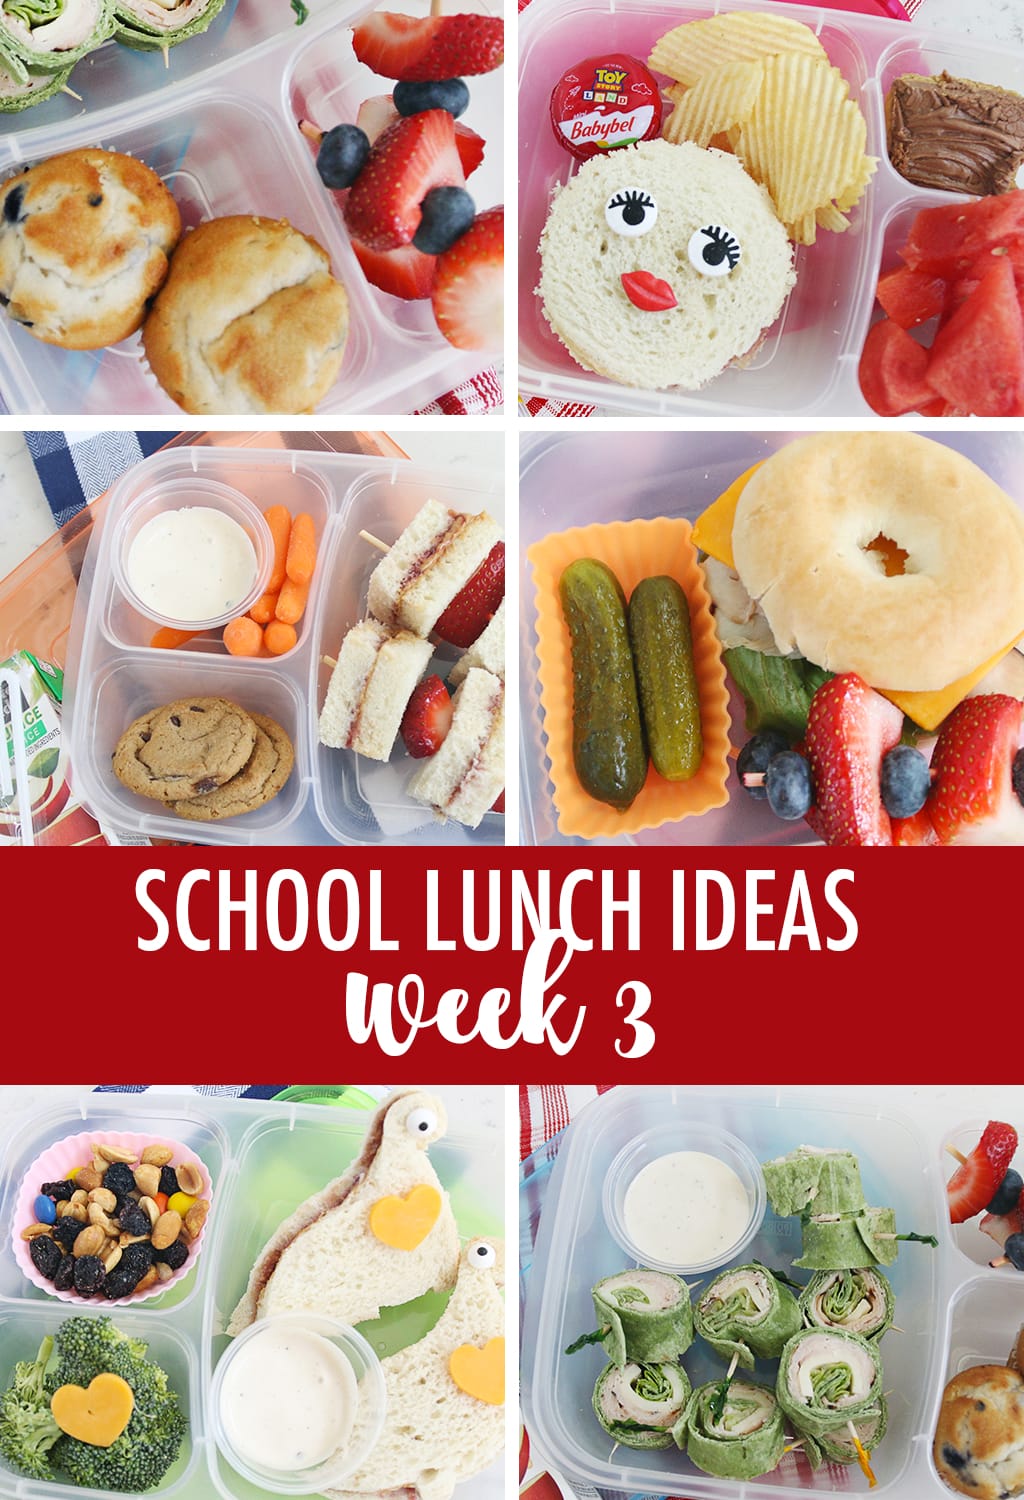 Lunch Ideas for School Week 3